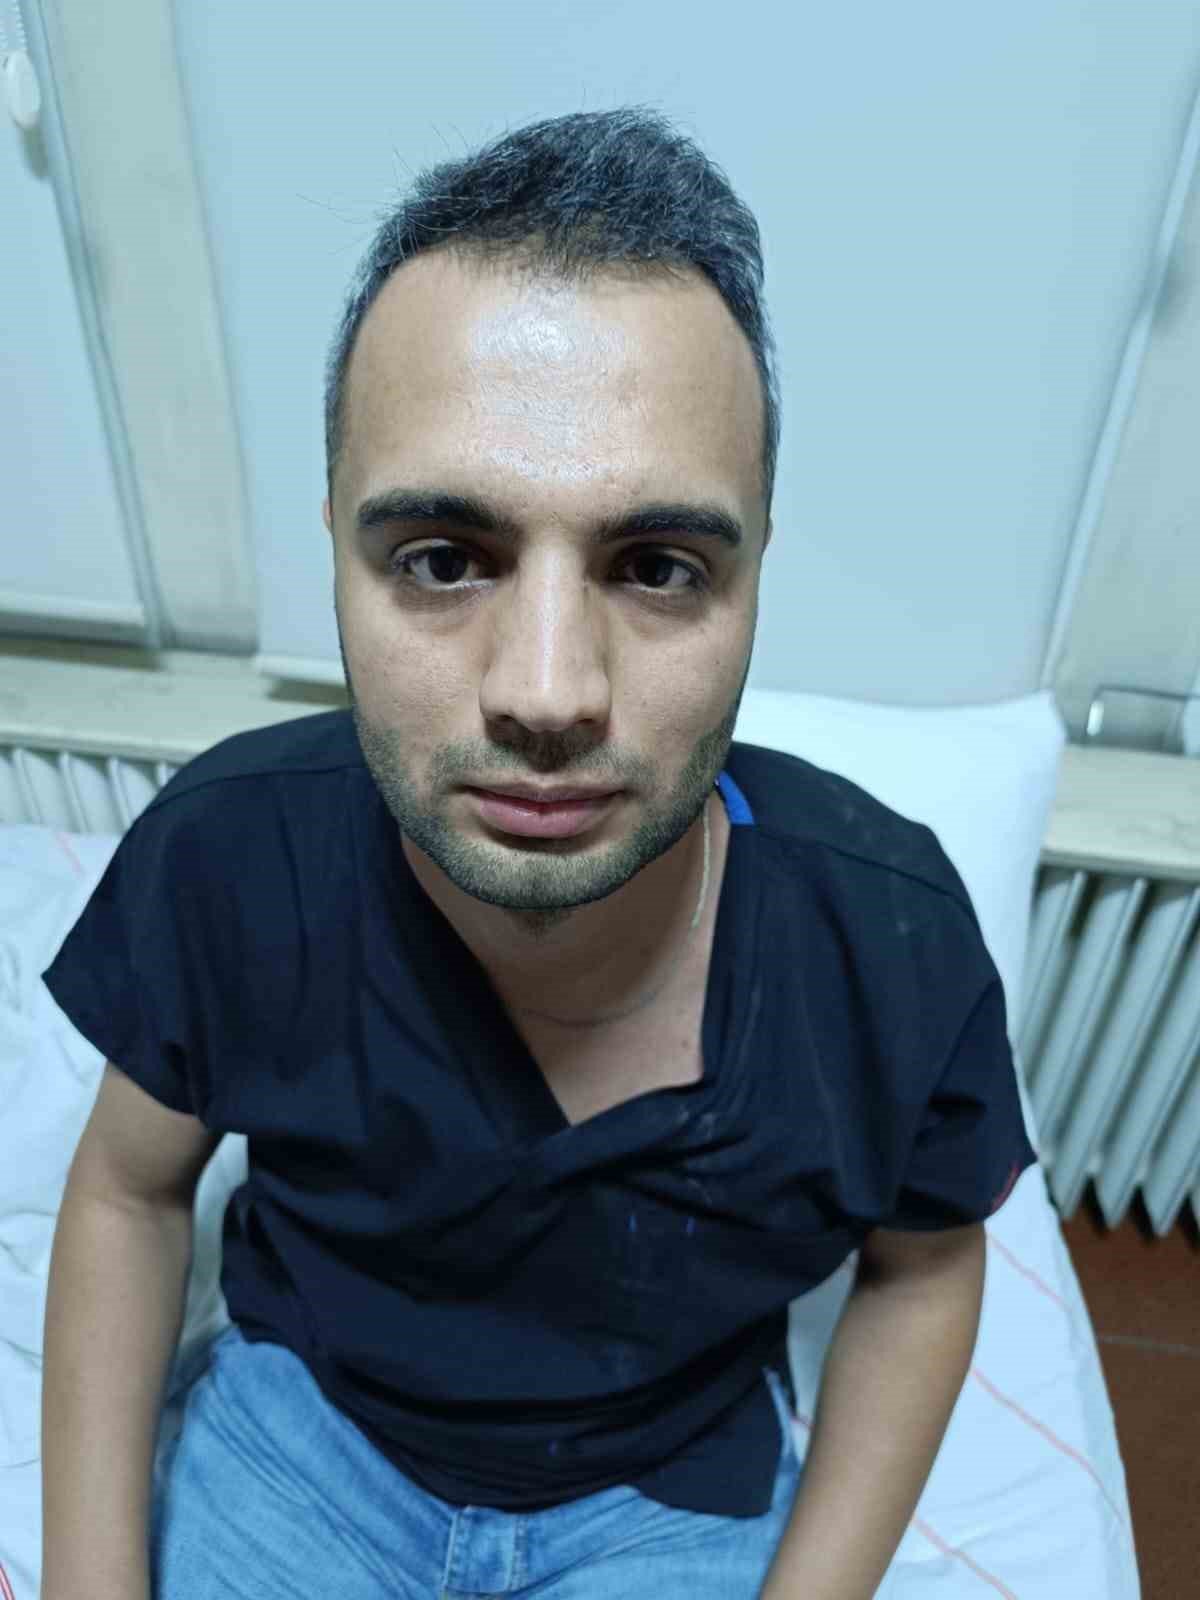 Gaziantep’te hastaya müdahale eden doktora saldırı